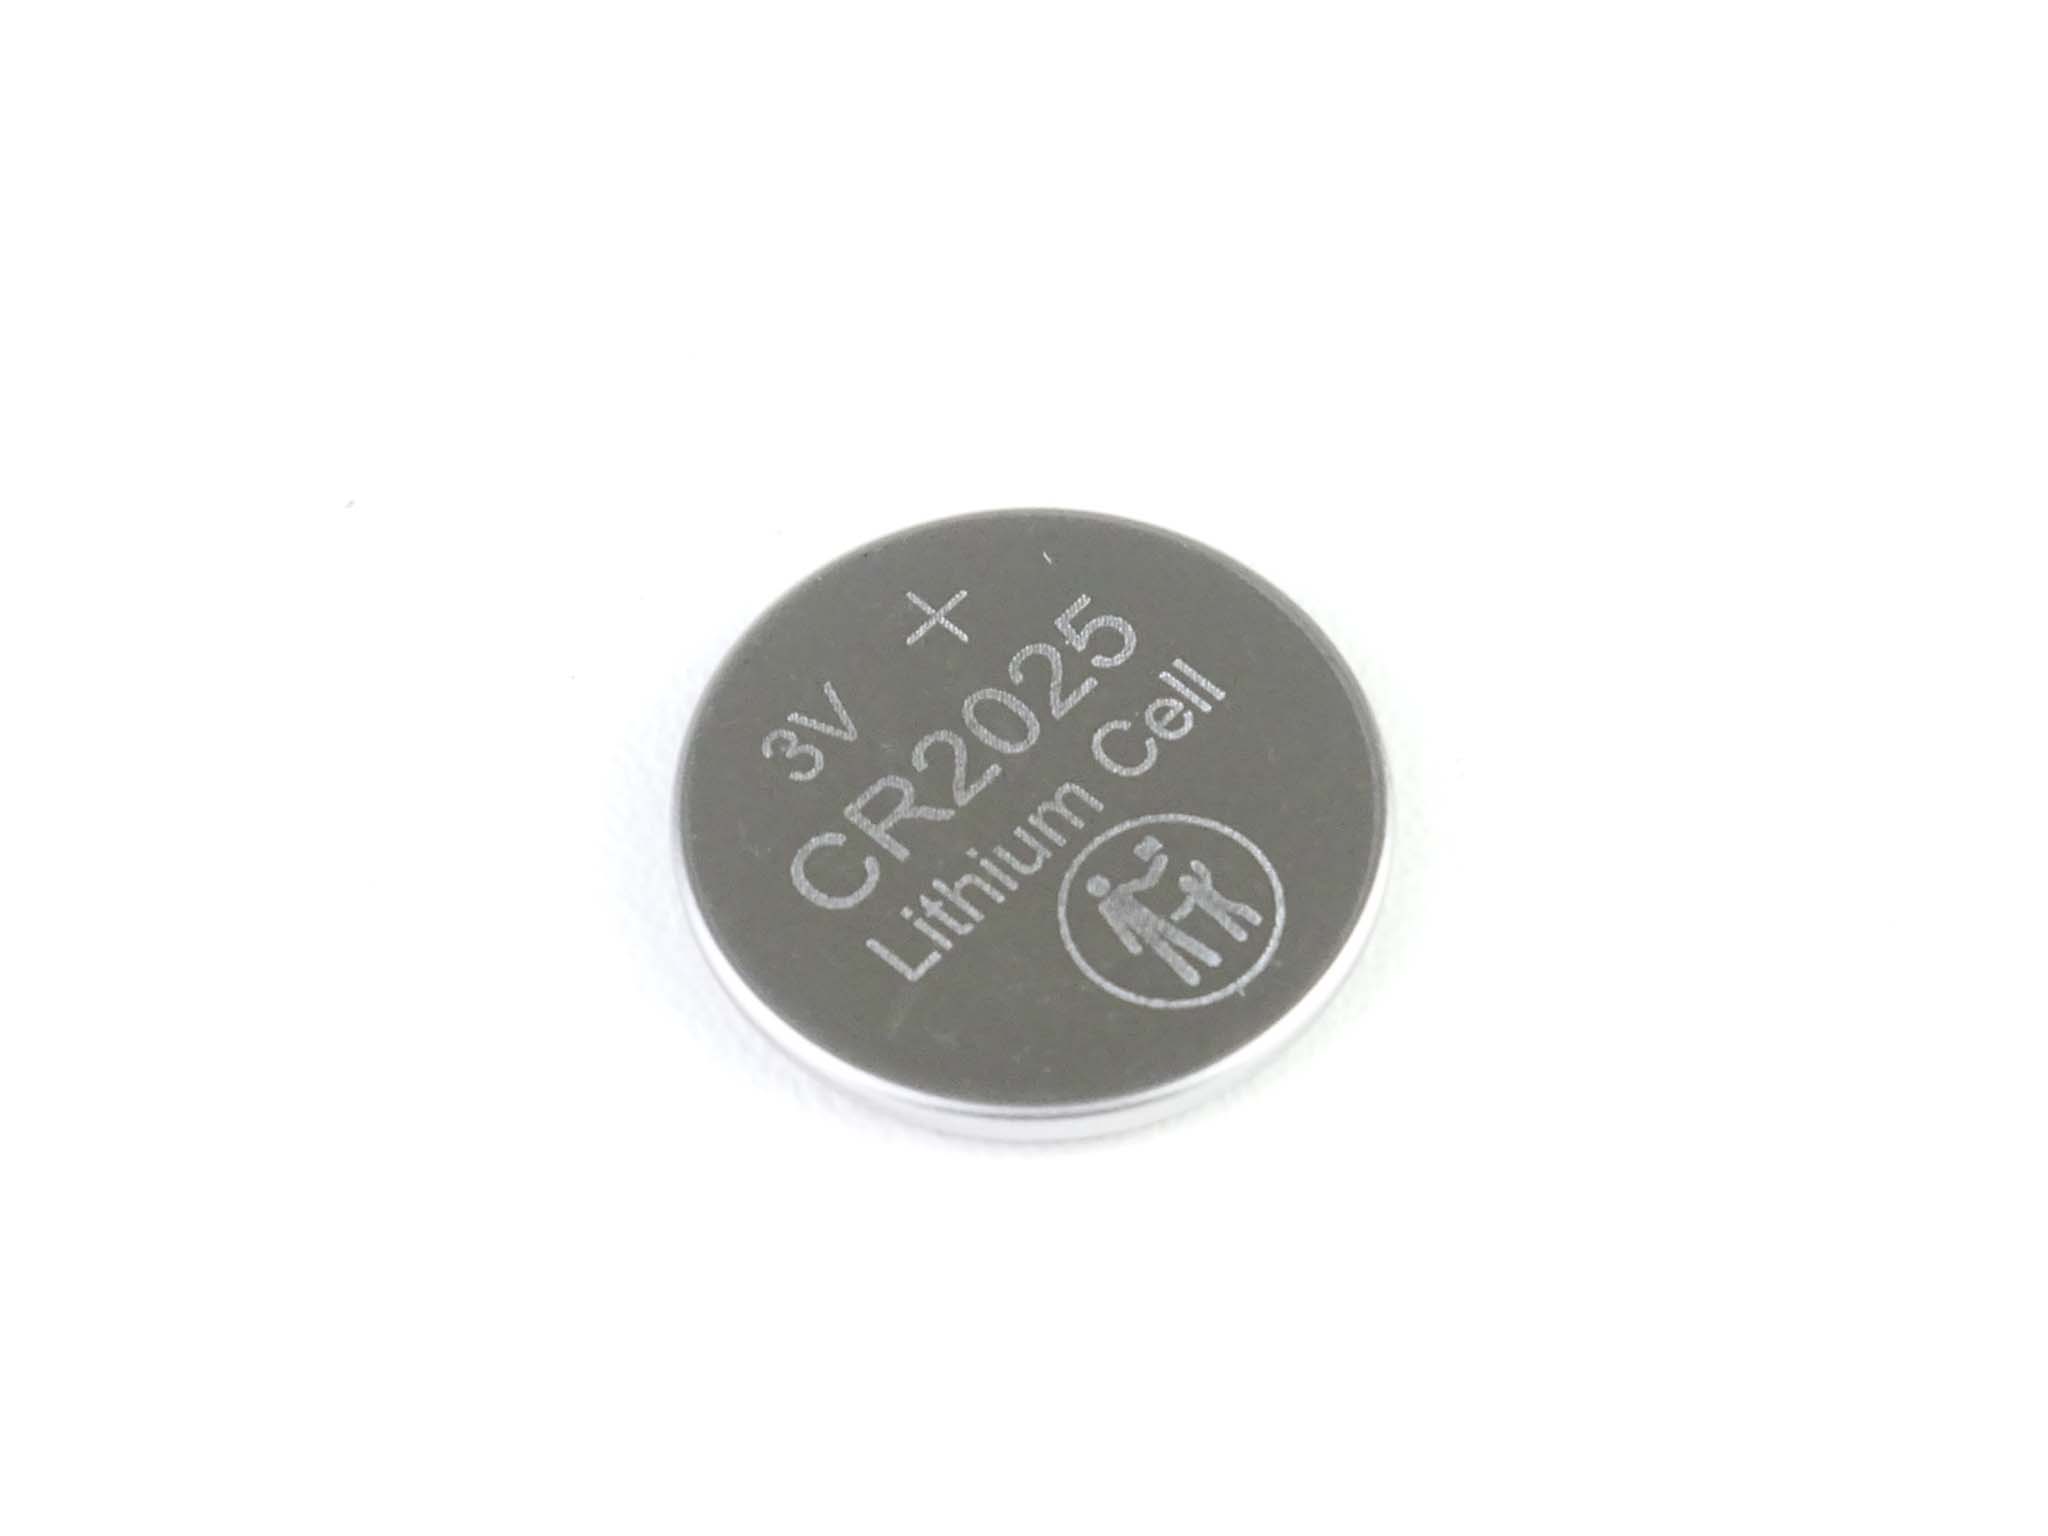 SteinGruppe - Knopfbatterie CR2025 (3V) für den Fahrzeugschlüssel - N10437301